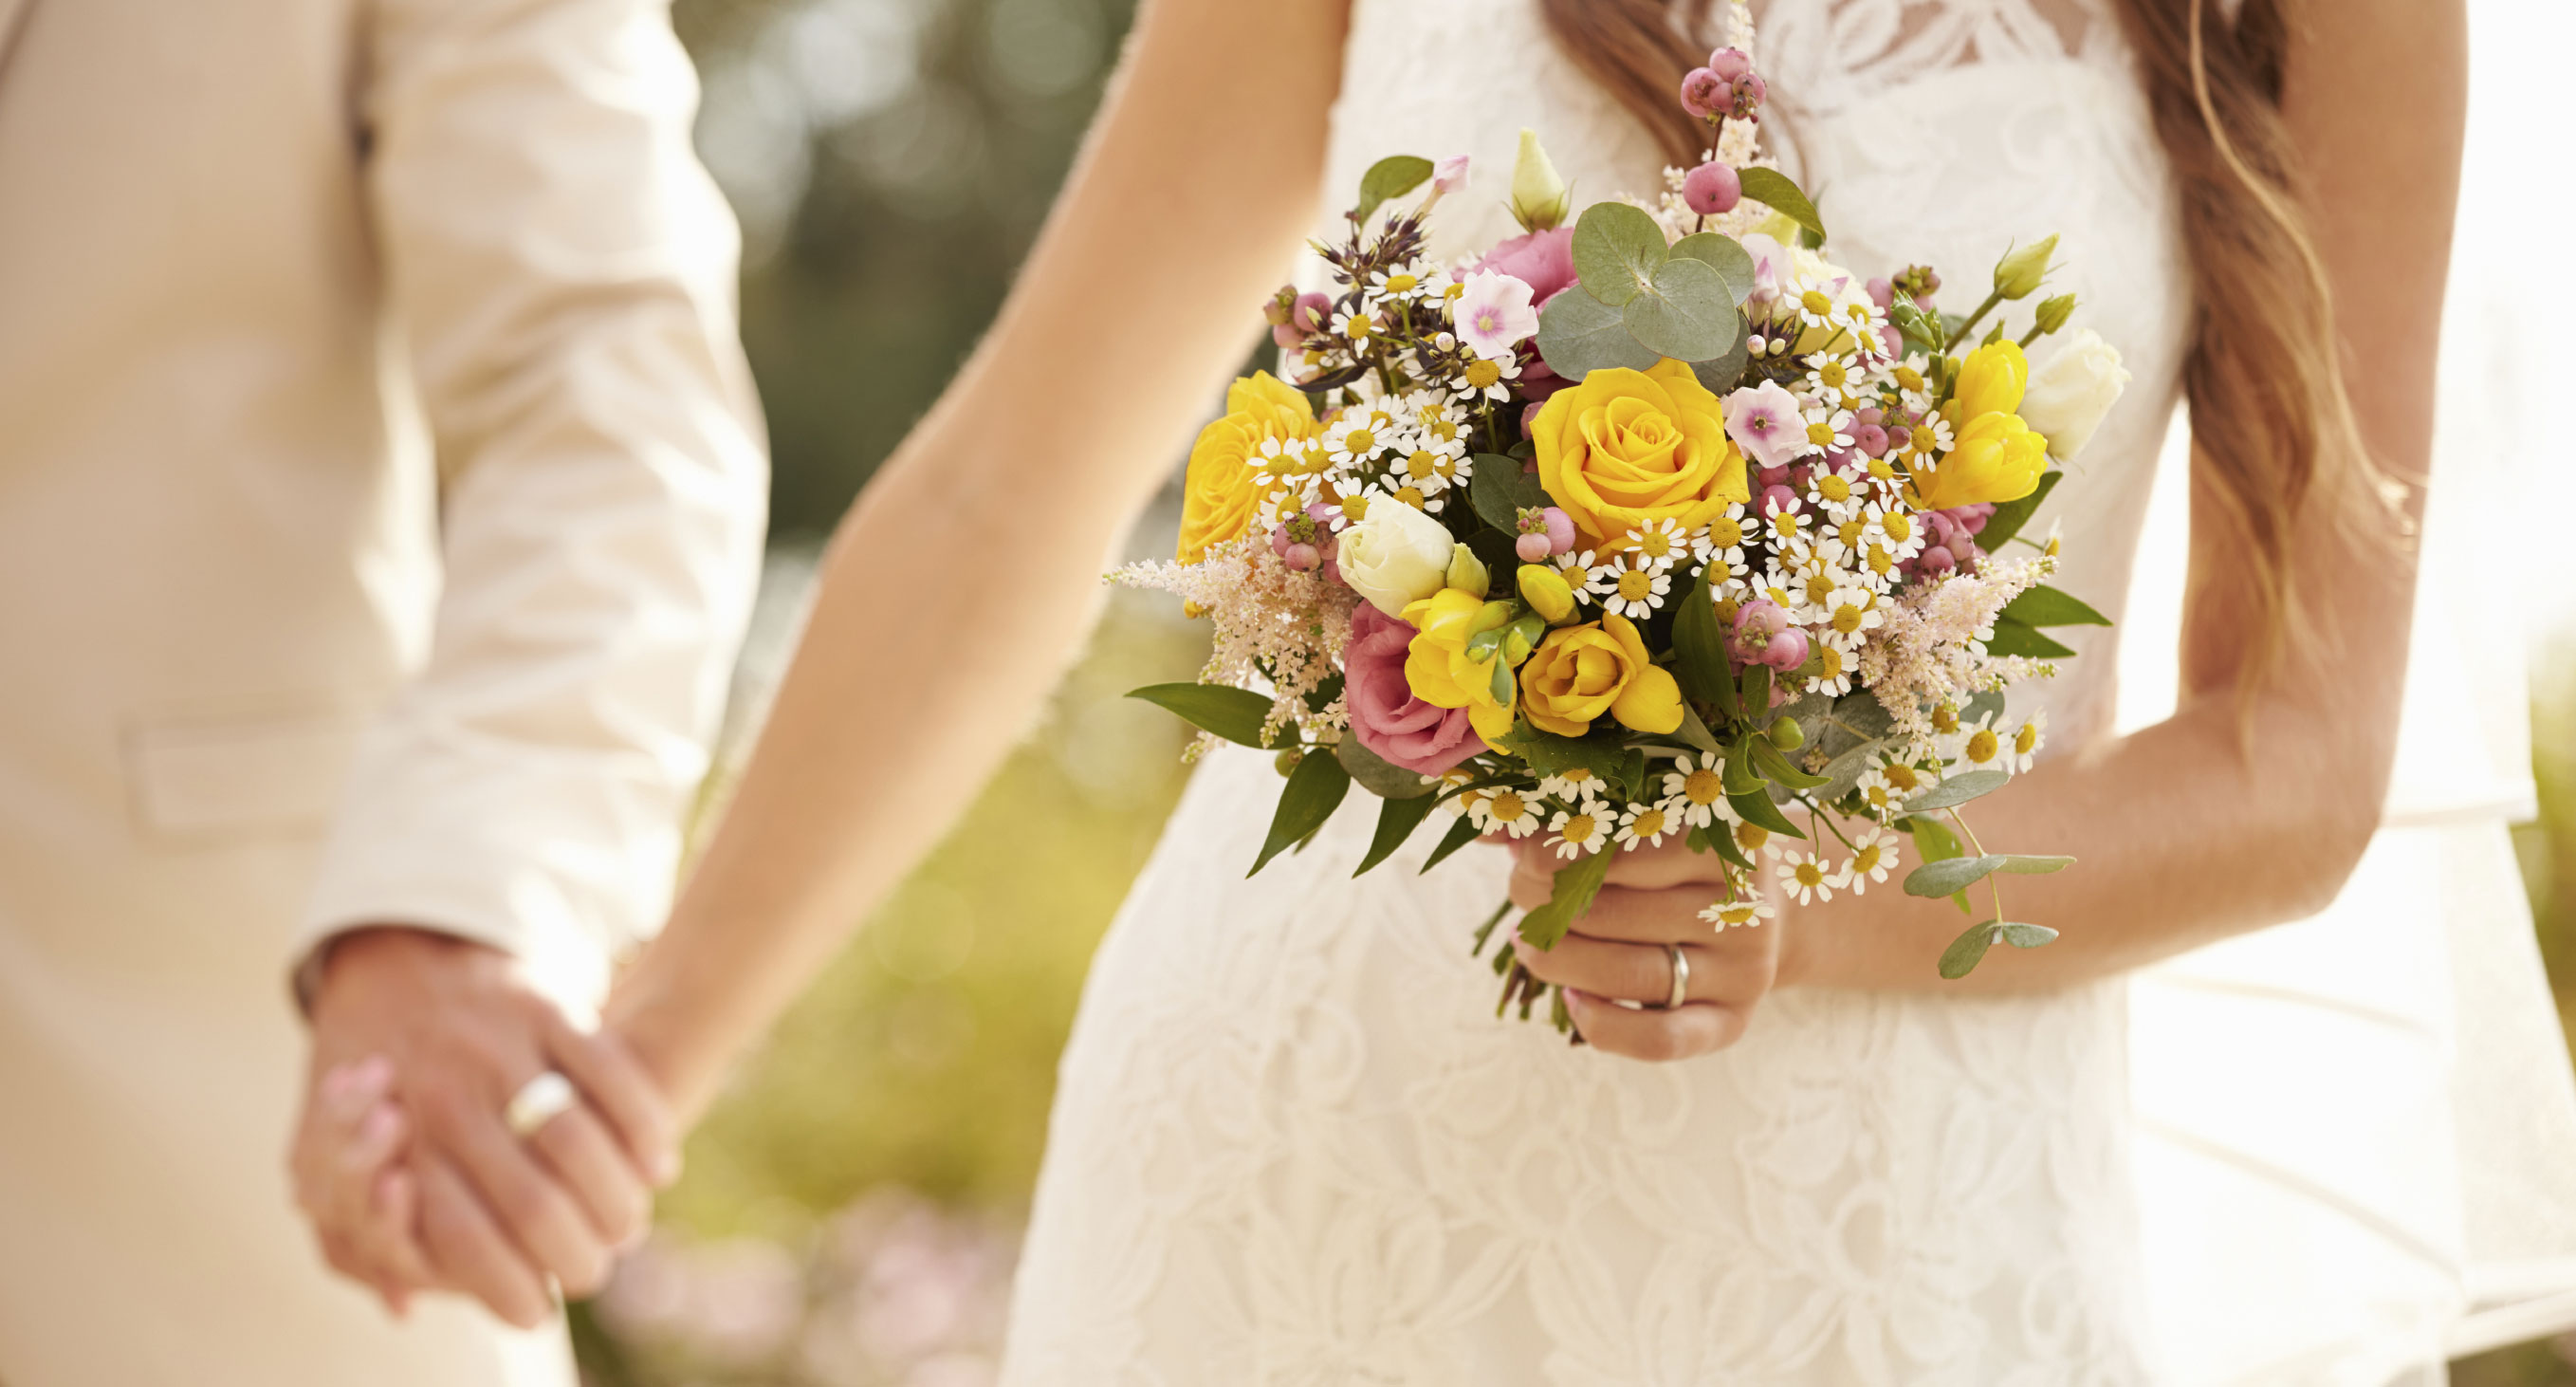 გრანდიოზული ქორწილის გადახდა განქორწინების შანსს ამცირებს - ახალი კვლევის შედეგი